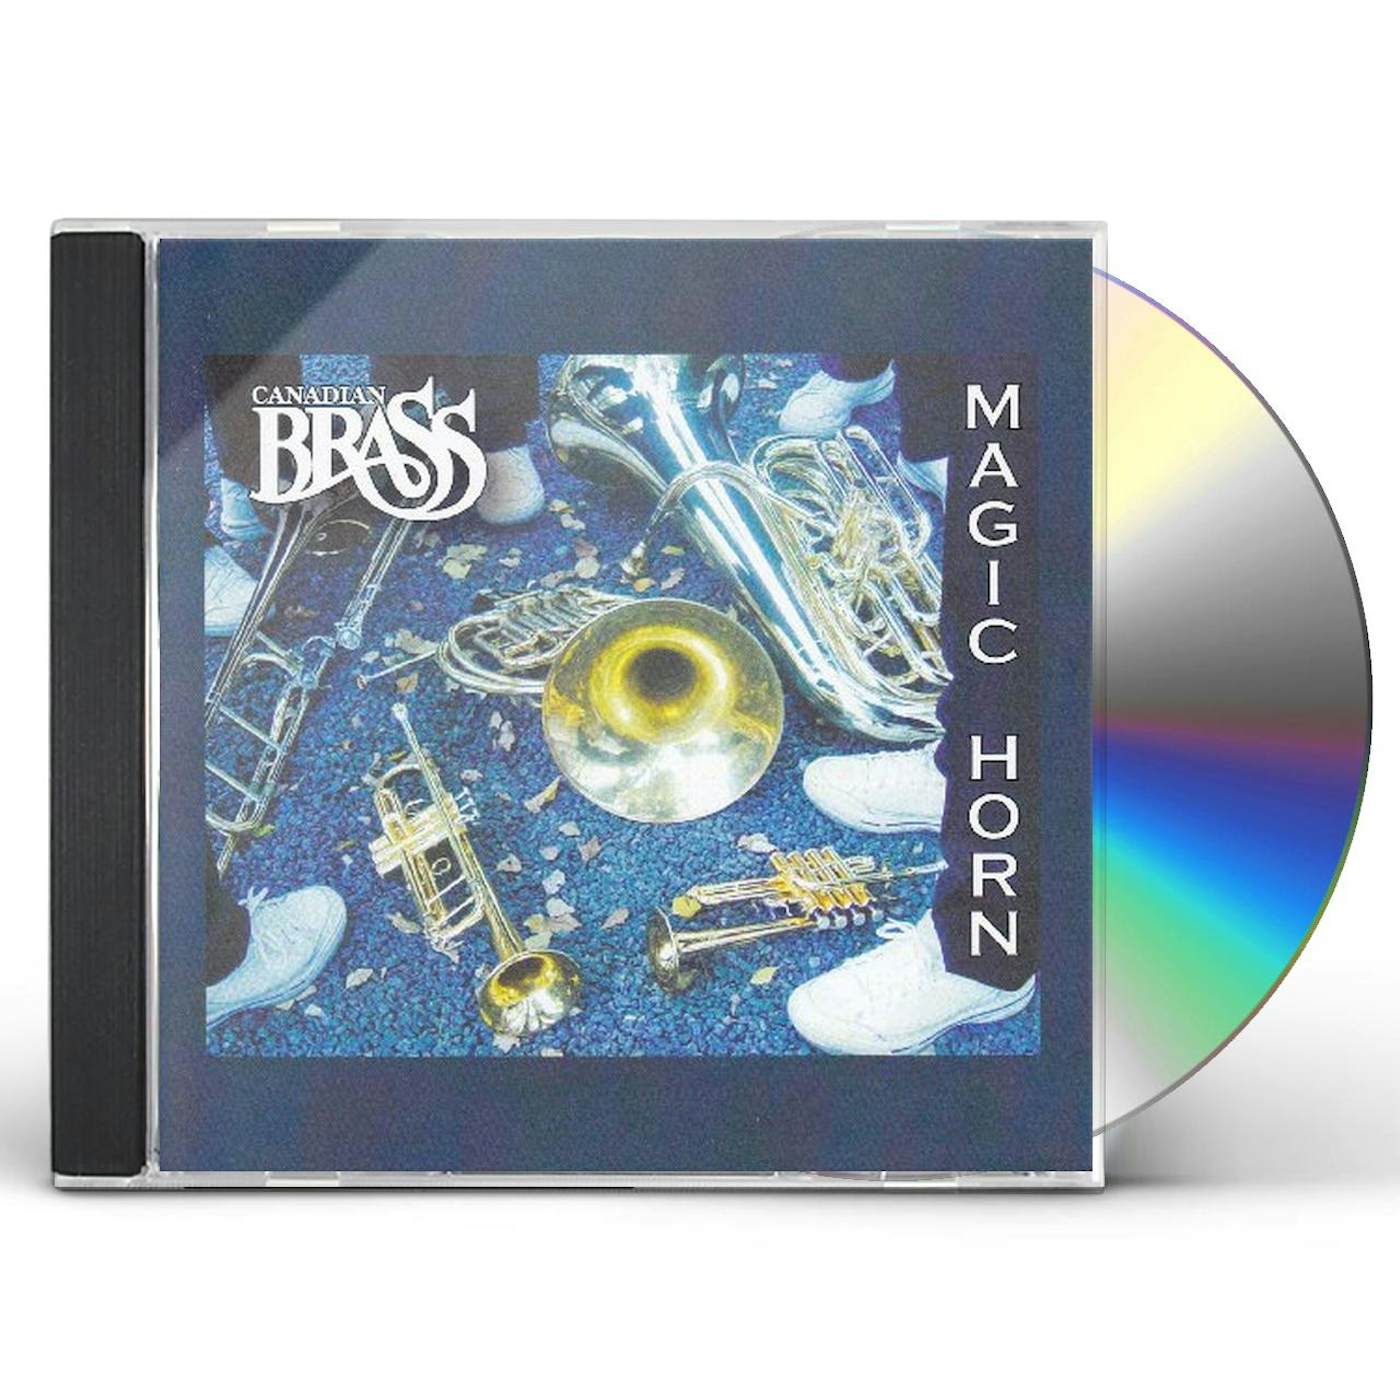 Canadian Brass MAGIC HORN CD